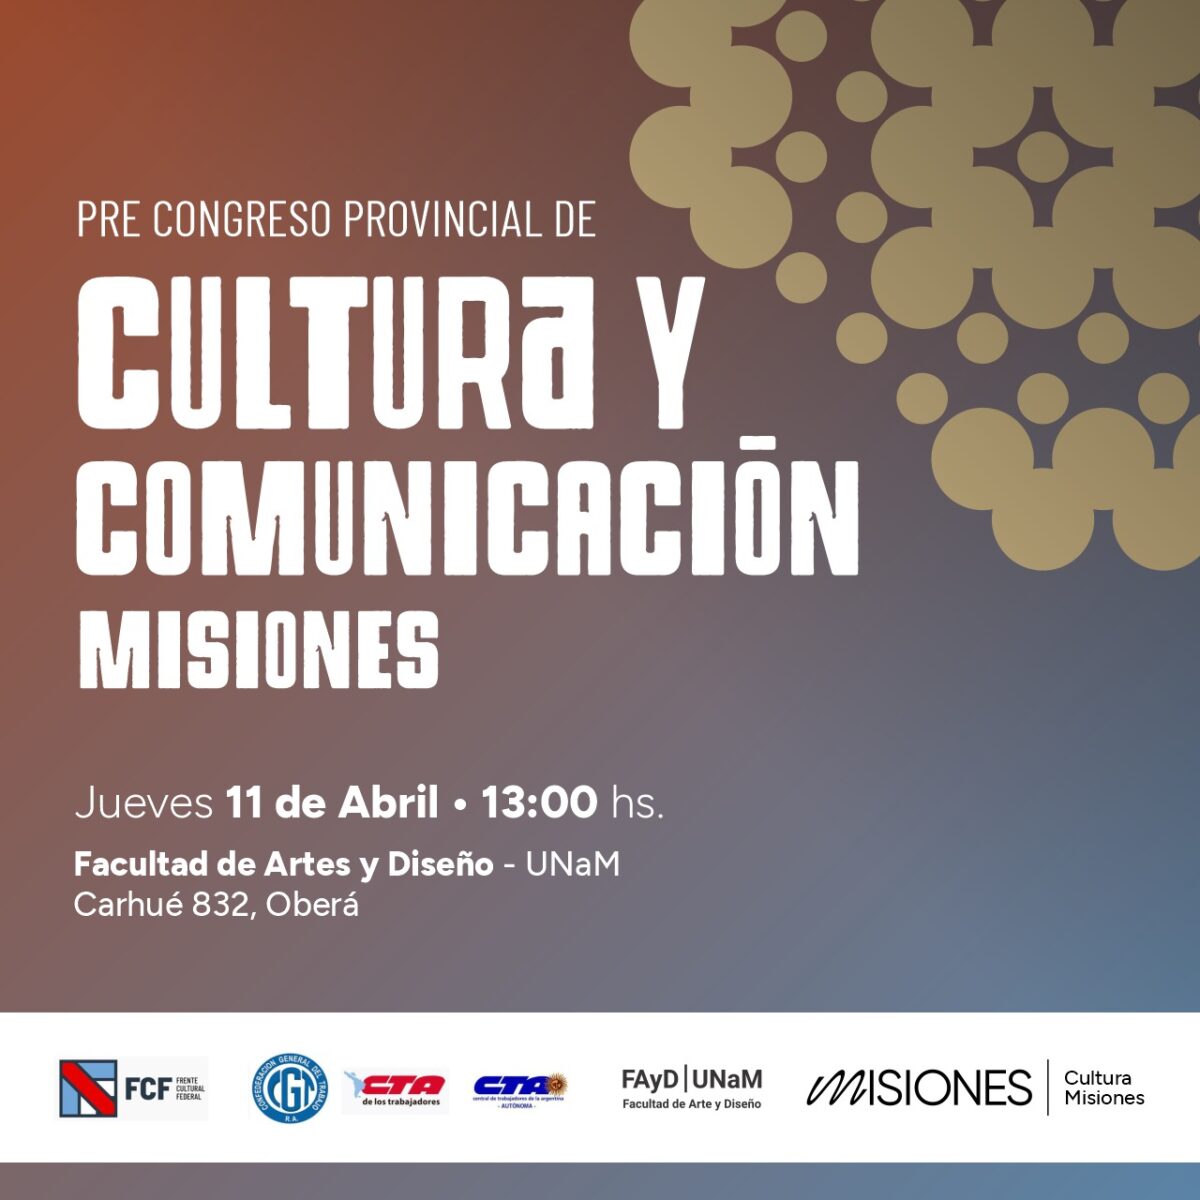 Nuevo Congreso Regional de Cultura y Comunicación en Misiones